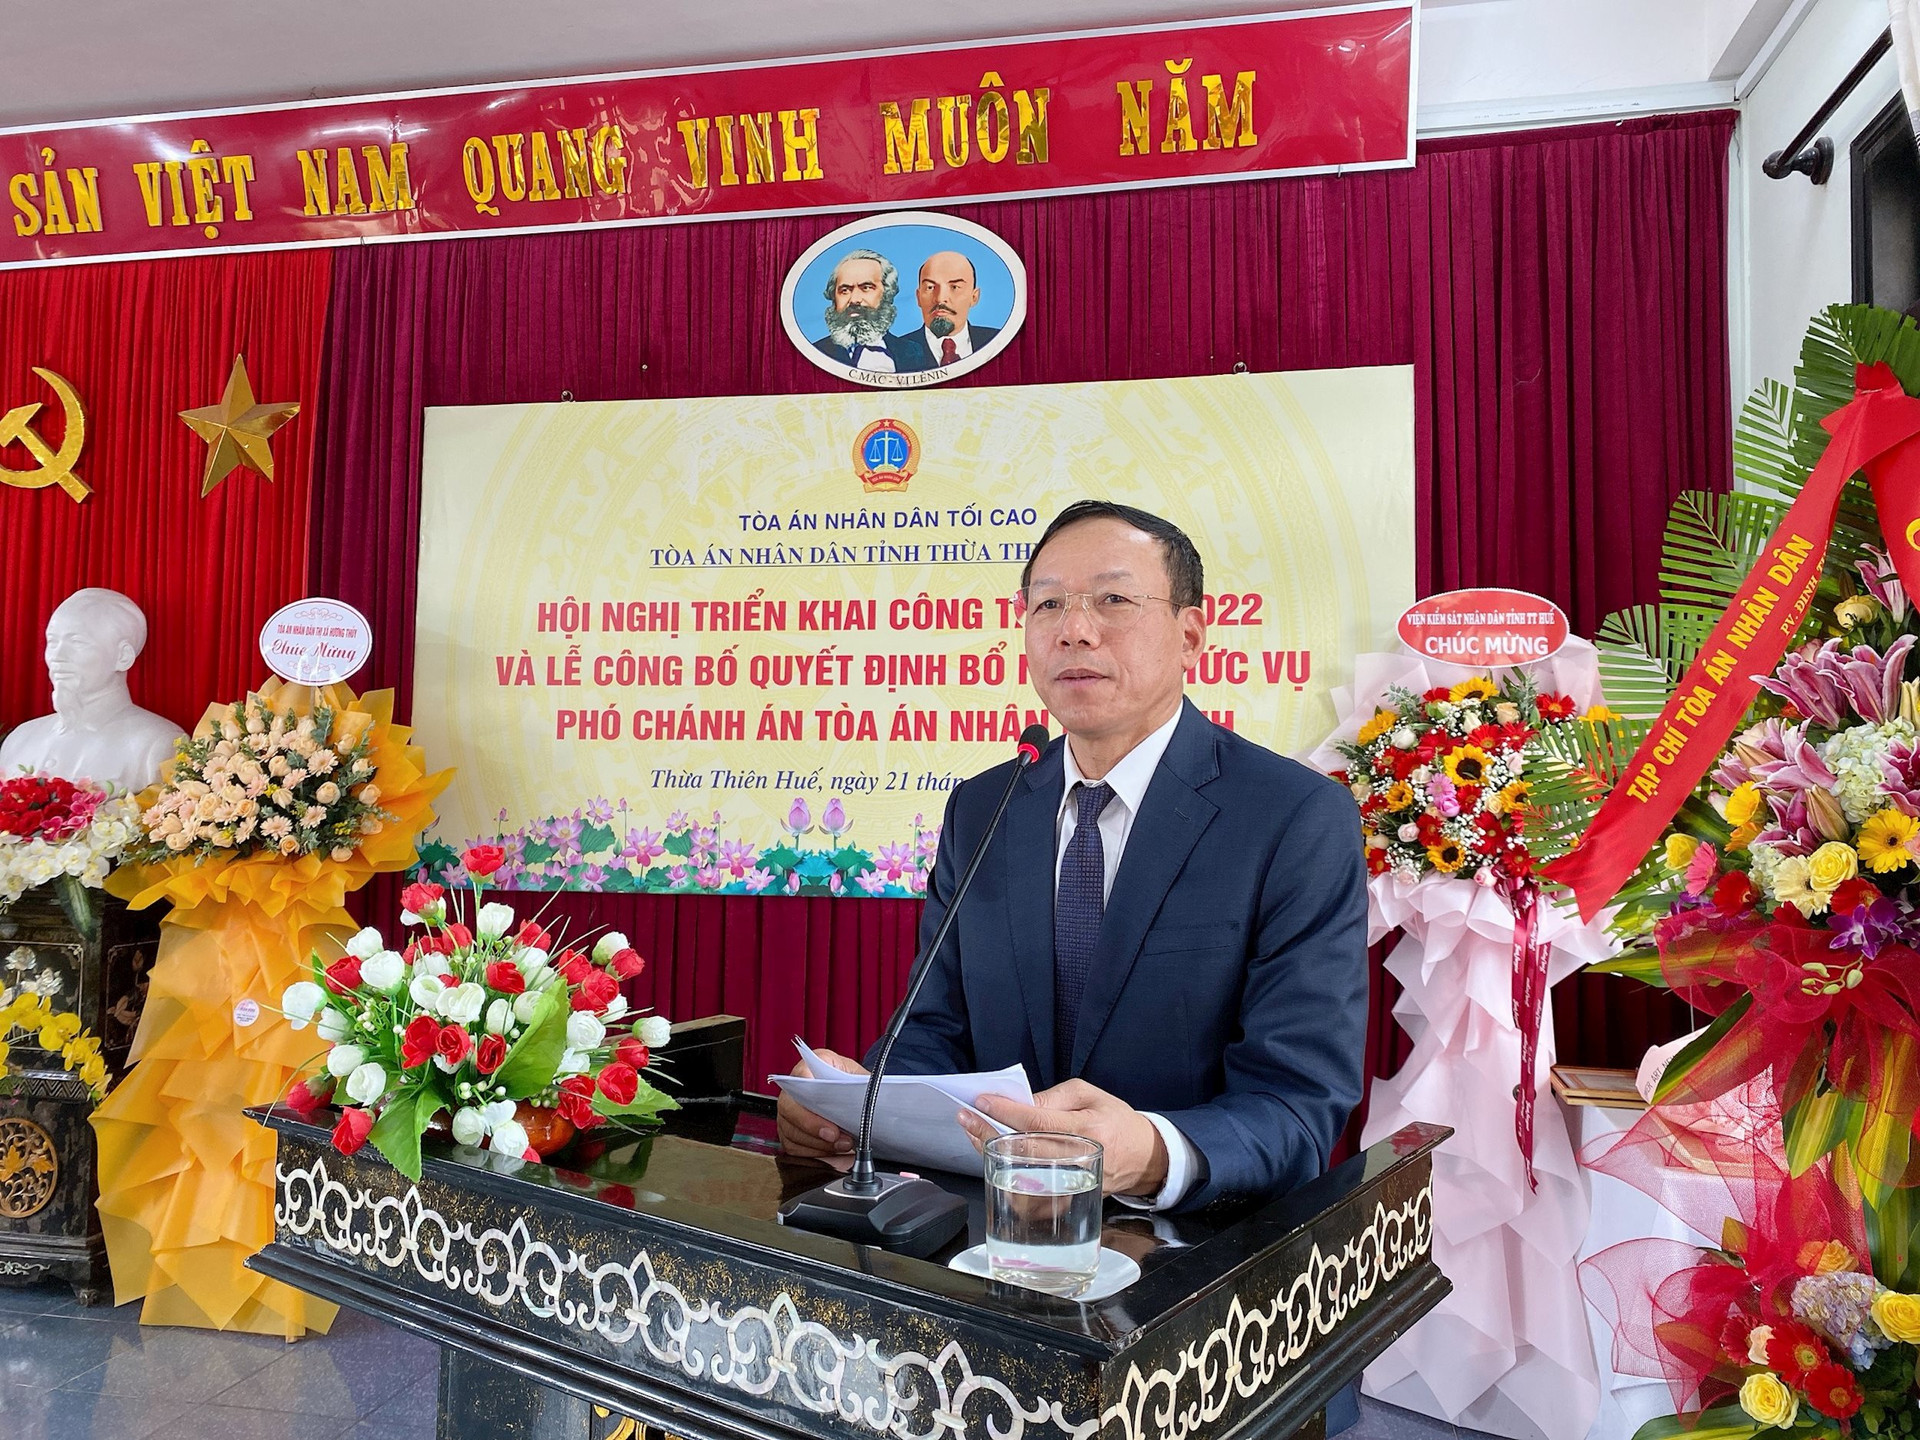 TAND tỉnh Thừa Thiên Huế tổ chức Hội nghị triển khai công tác Tòa án năm 2022